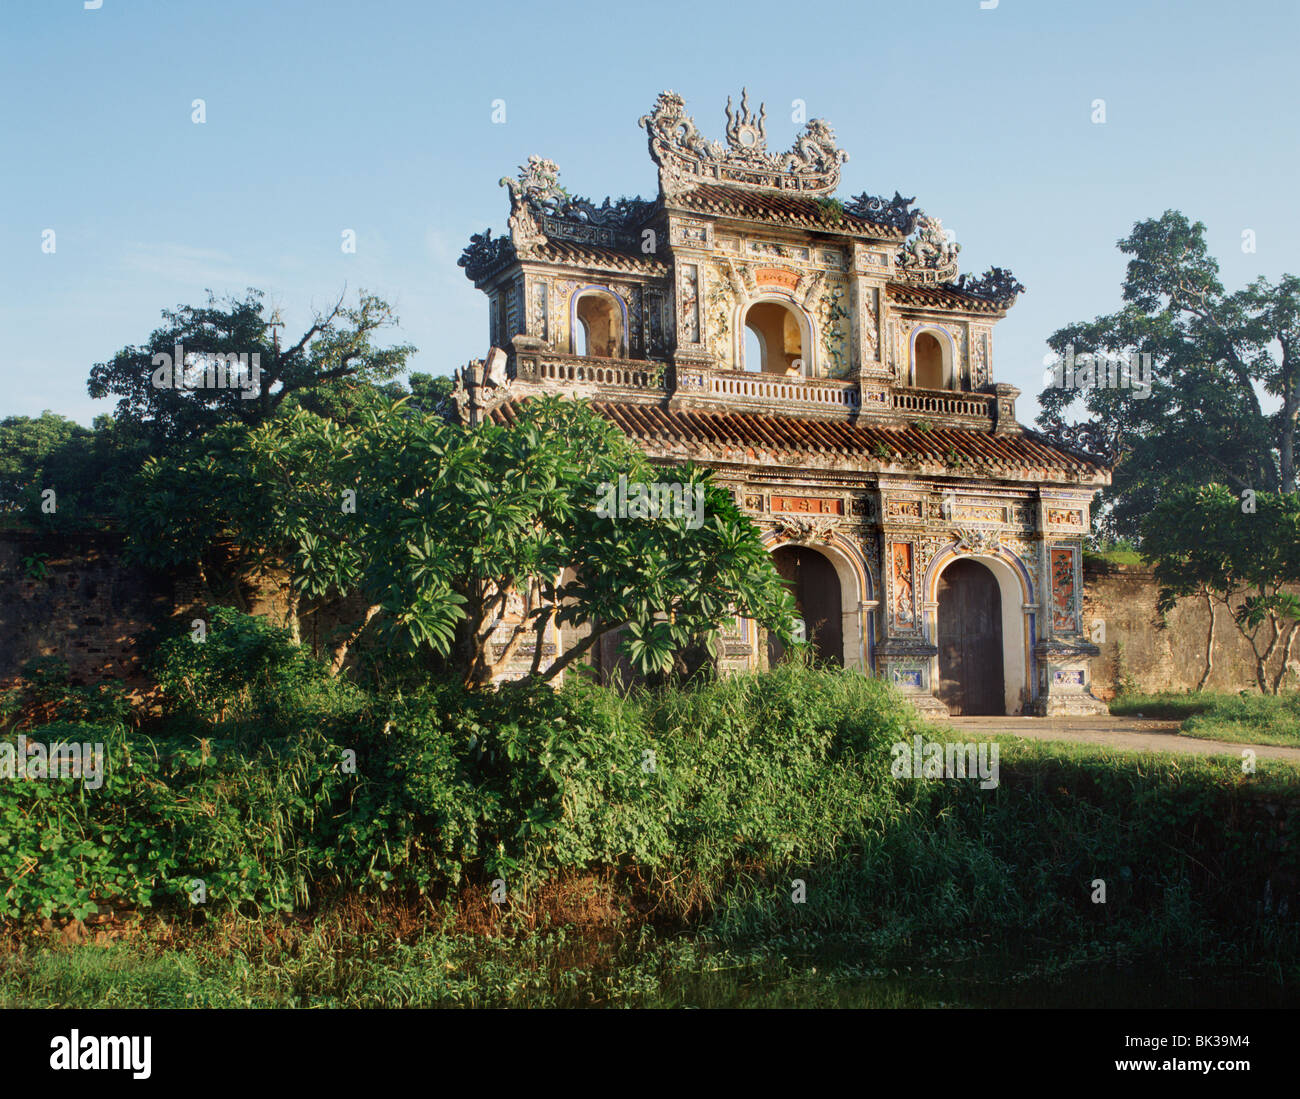 La porte de l'humanité (Porte de l'Est), la citadelle de Hue, Site du patrimoine mondial de l'UNESCO, le Vietnam, l'Indochine, l'Asie du Sud-Est, Asie Banque D'Images